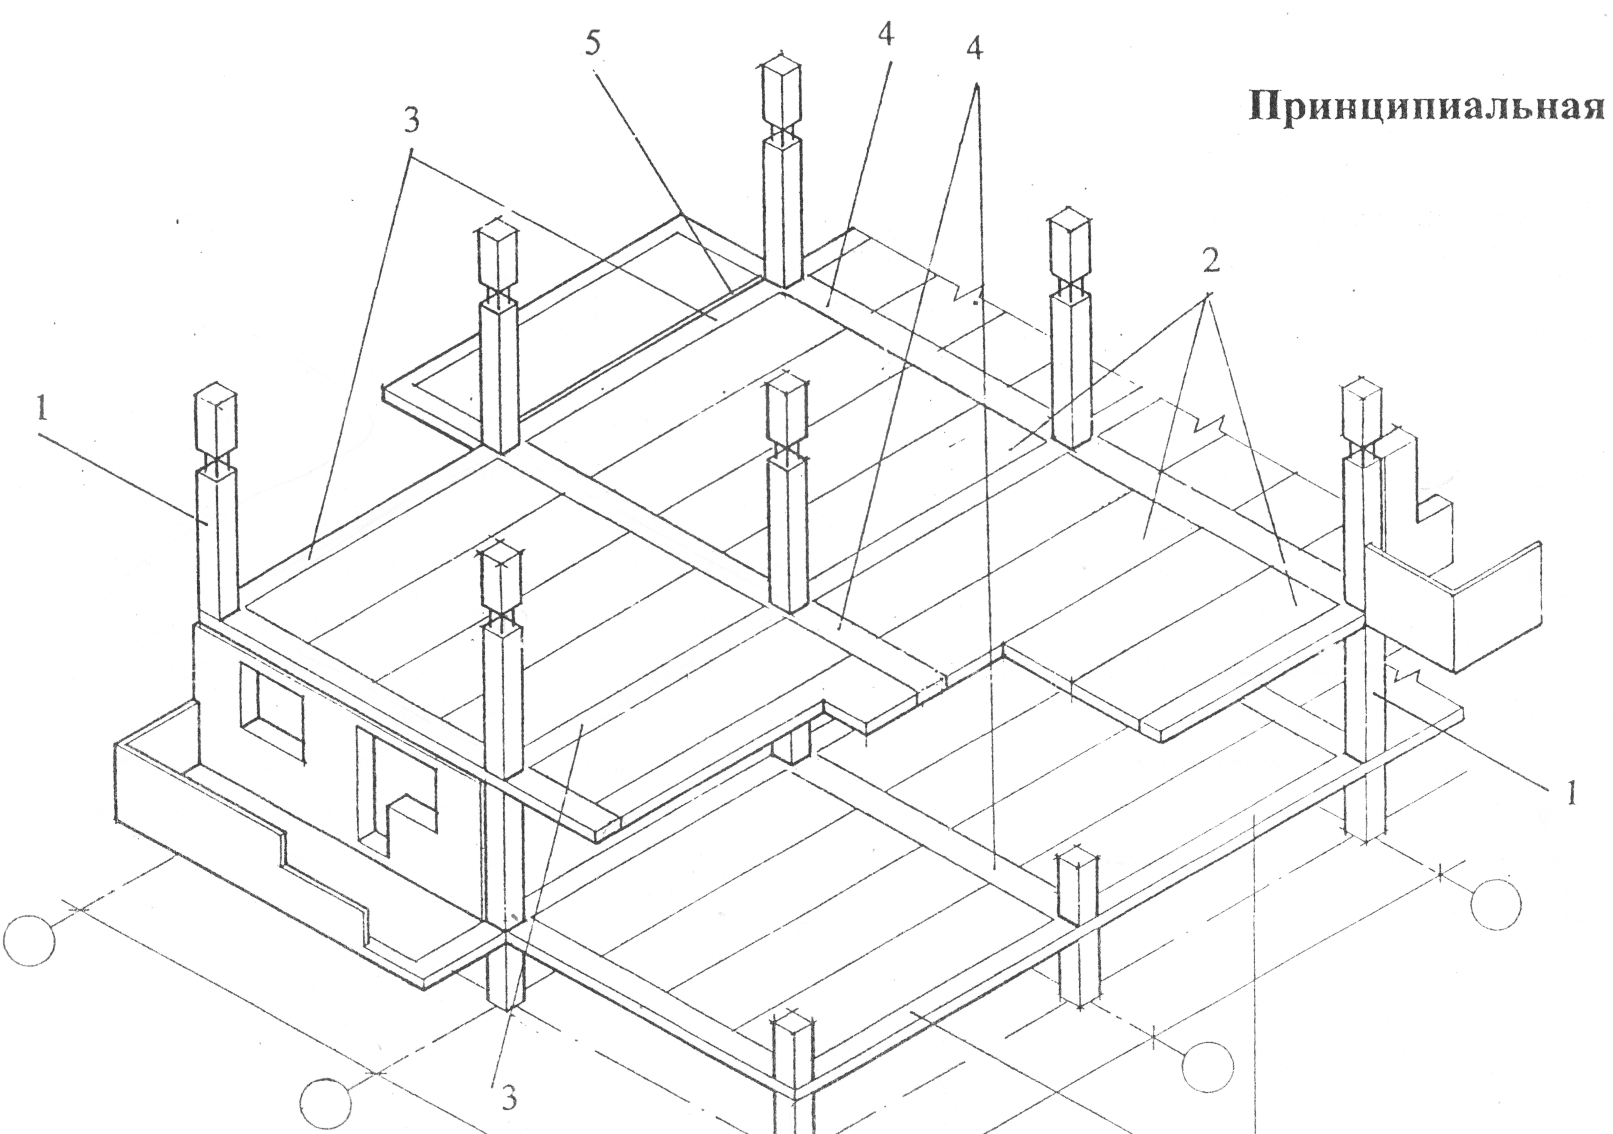 Основные конструктивные элементы связевого сборного железобетонного каркасно-панельного здания